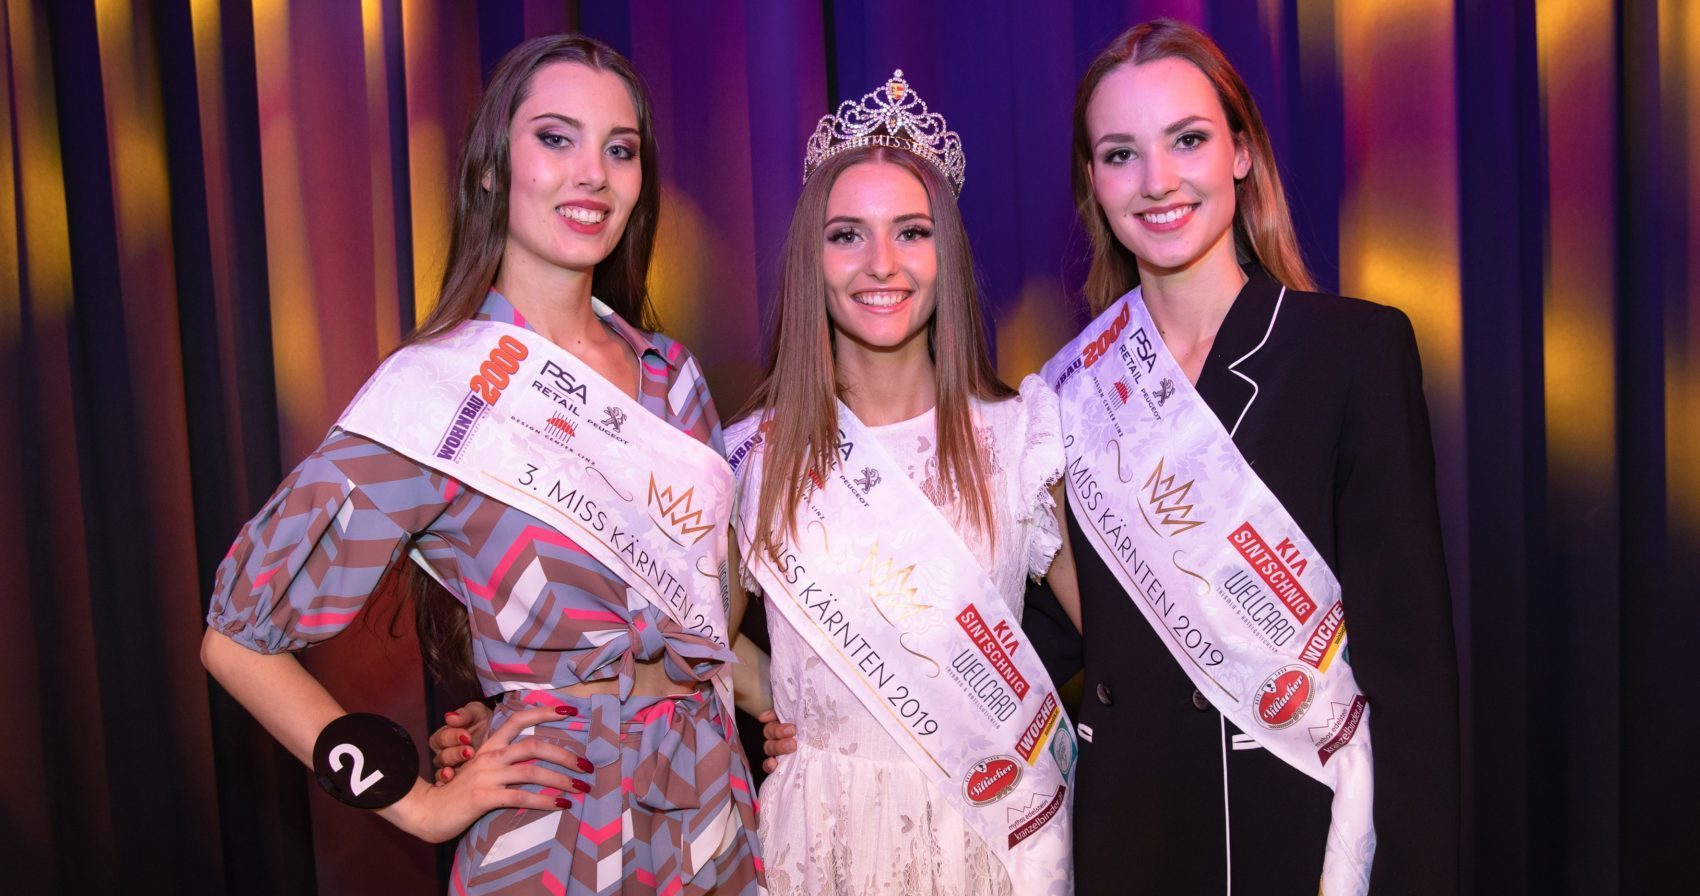 Ein Traum für Fashionistas: Auch die Top 3 der Miss Kärnten Wahl sind begeistert von der neuen Emel Gloss Kollektion. (c) Dieter Kulmer Photography